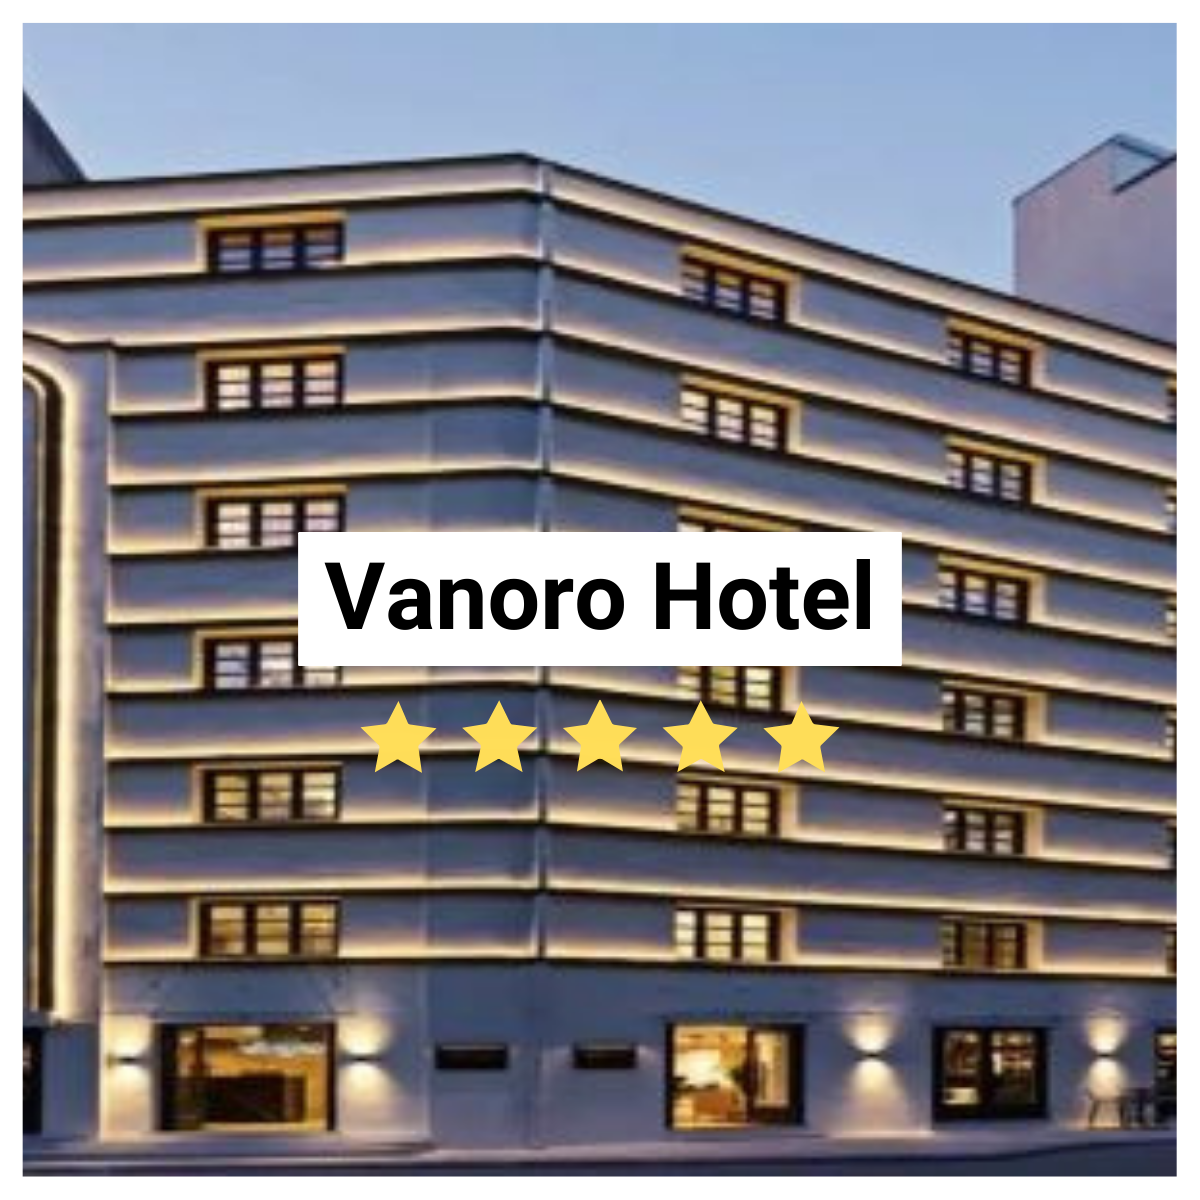 Vanoro Hotel Image. 